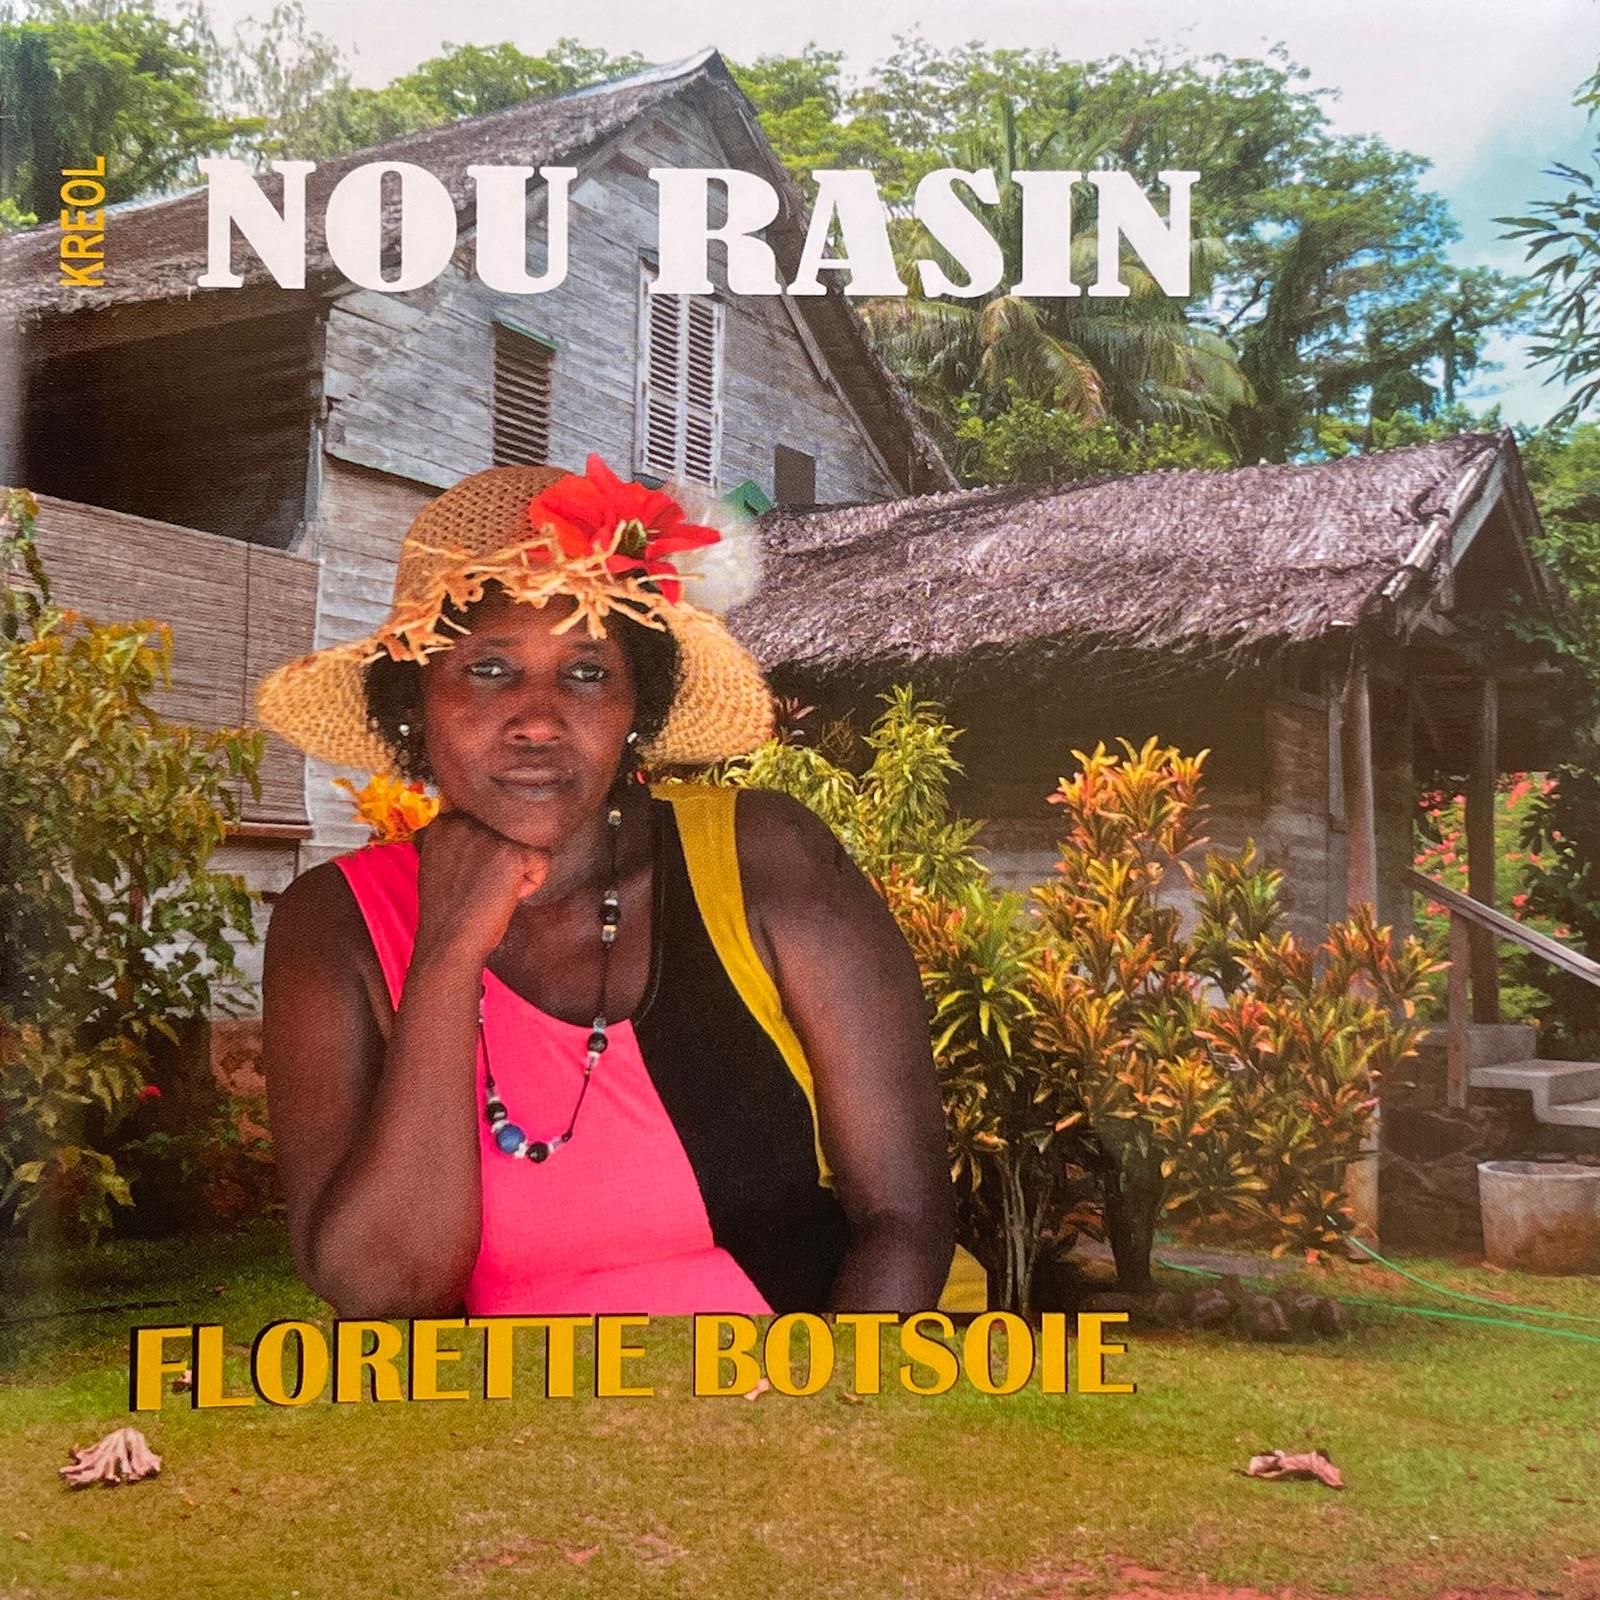 Florette Botsoie